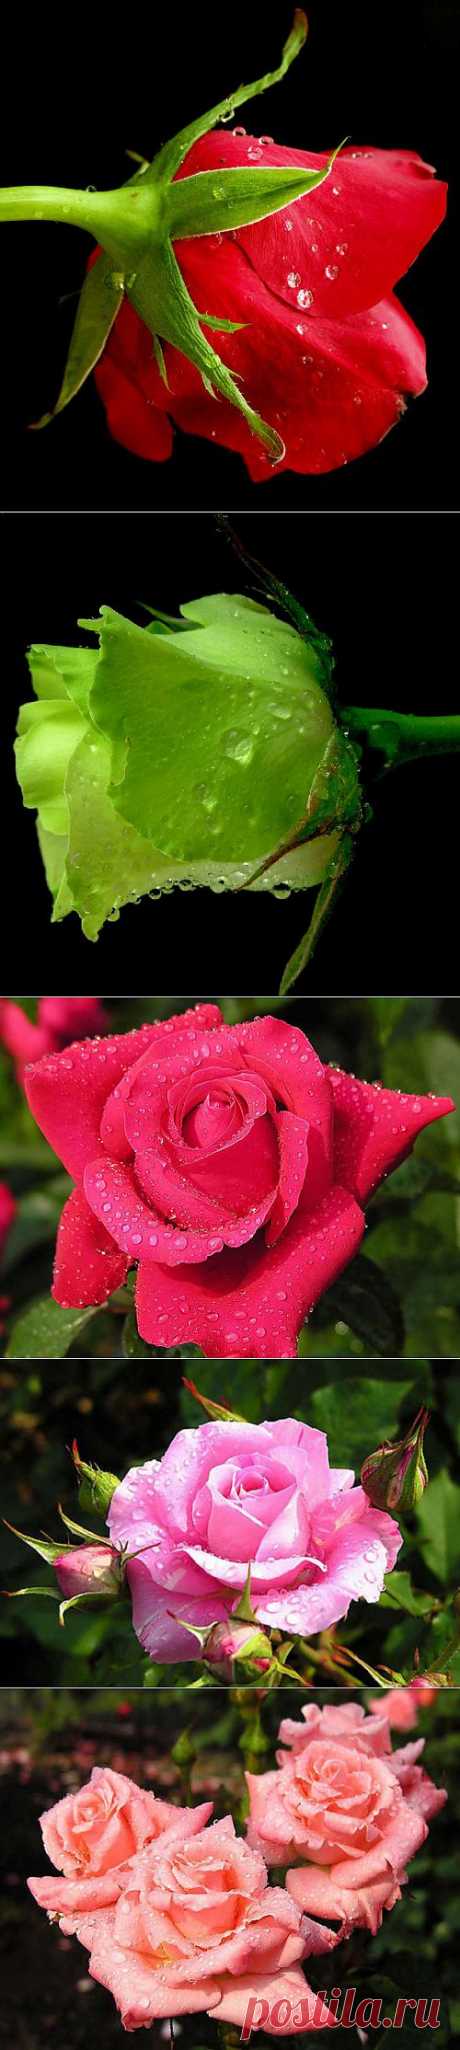 Капли росы на цветах роз, фотографии роз после дождя